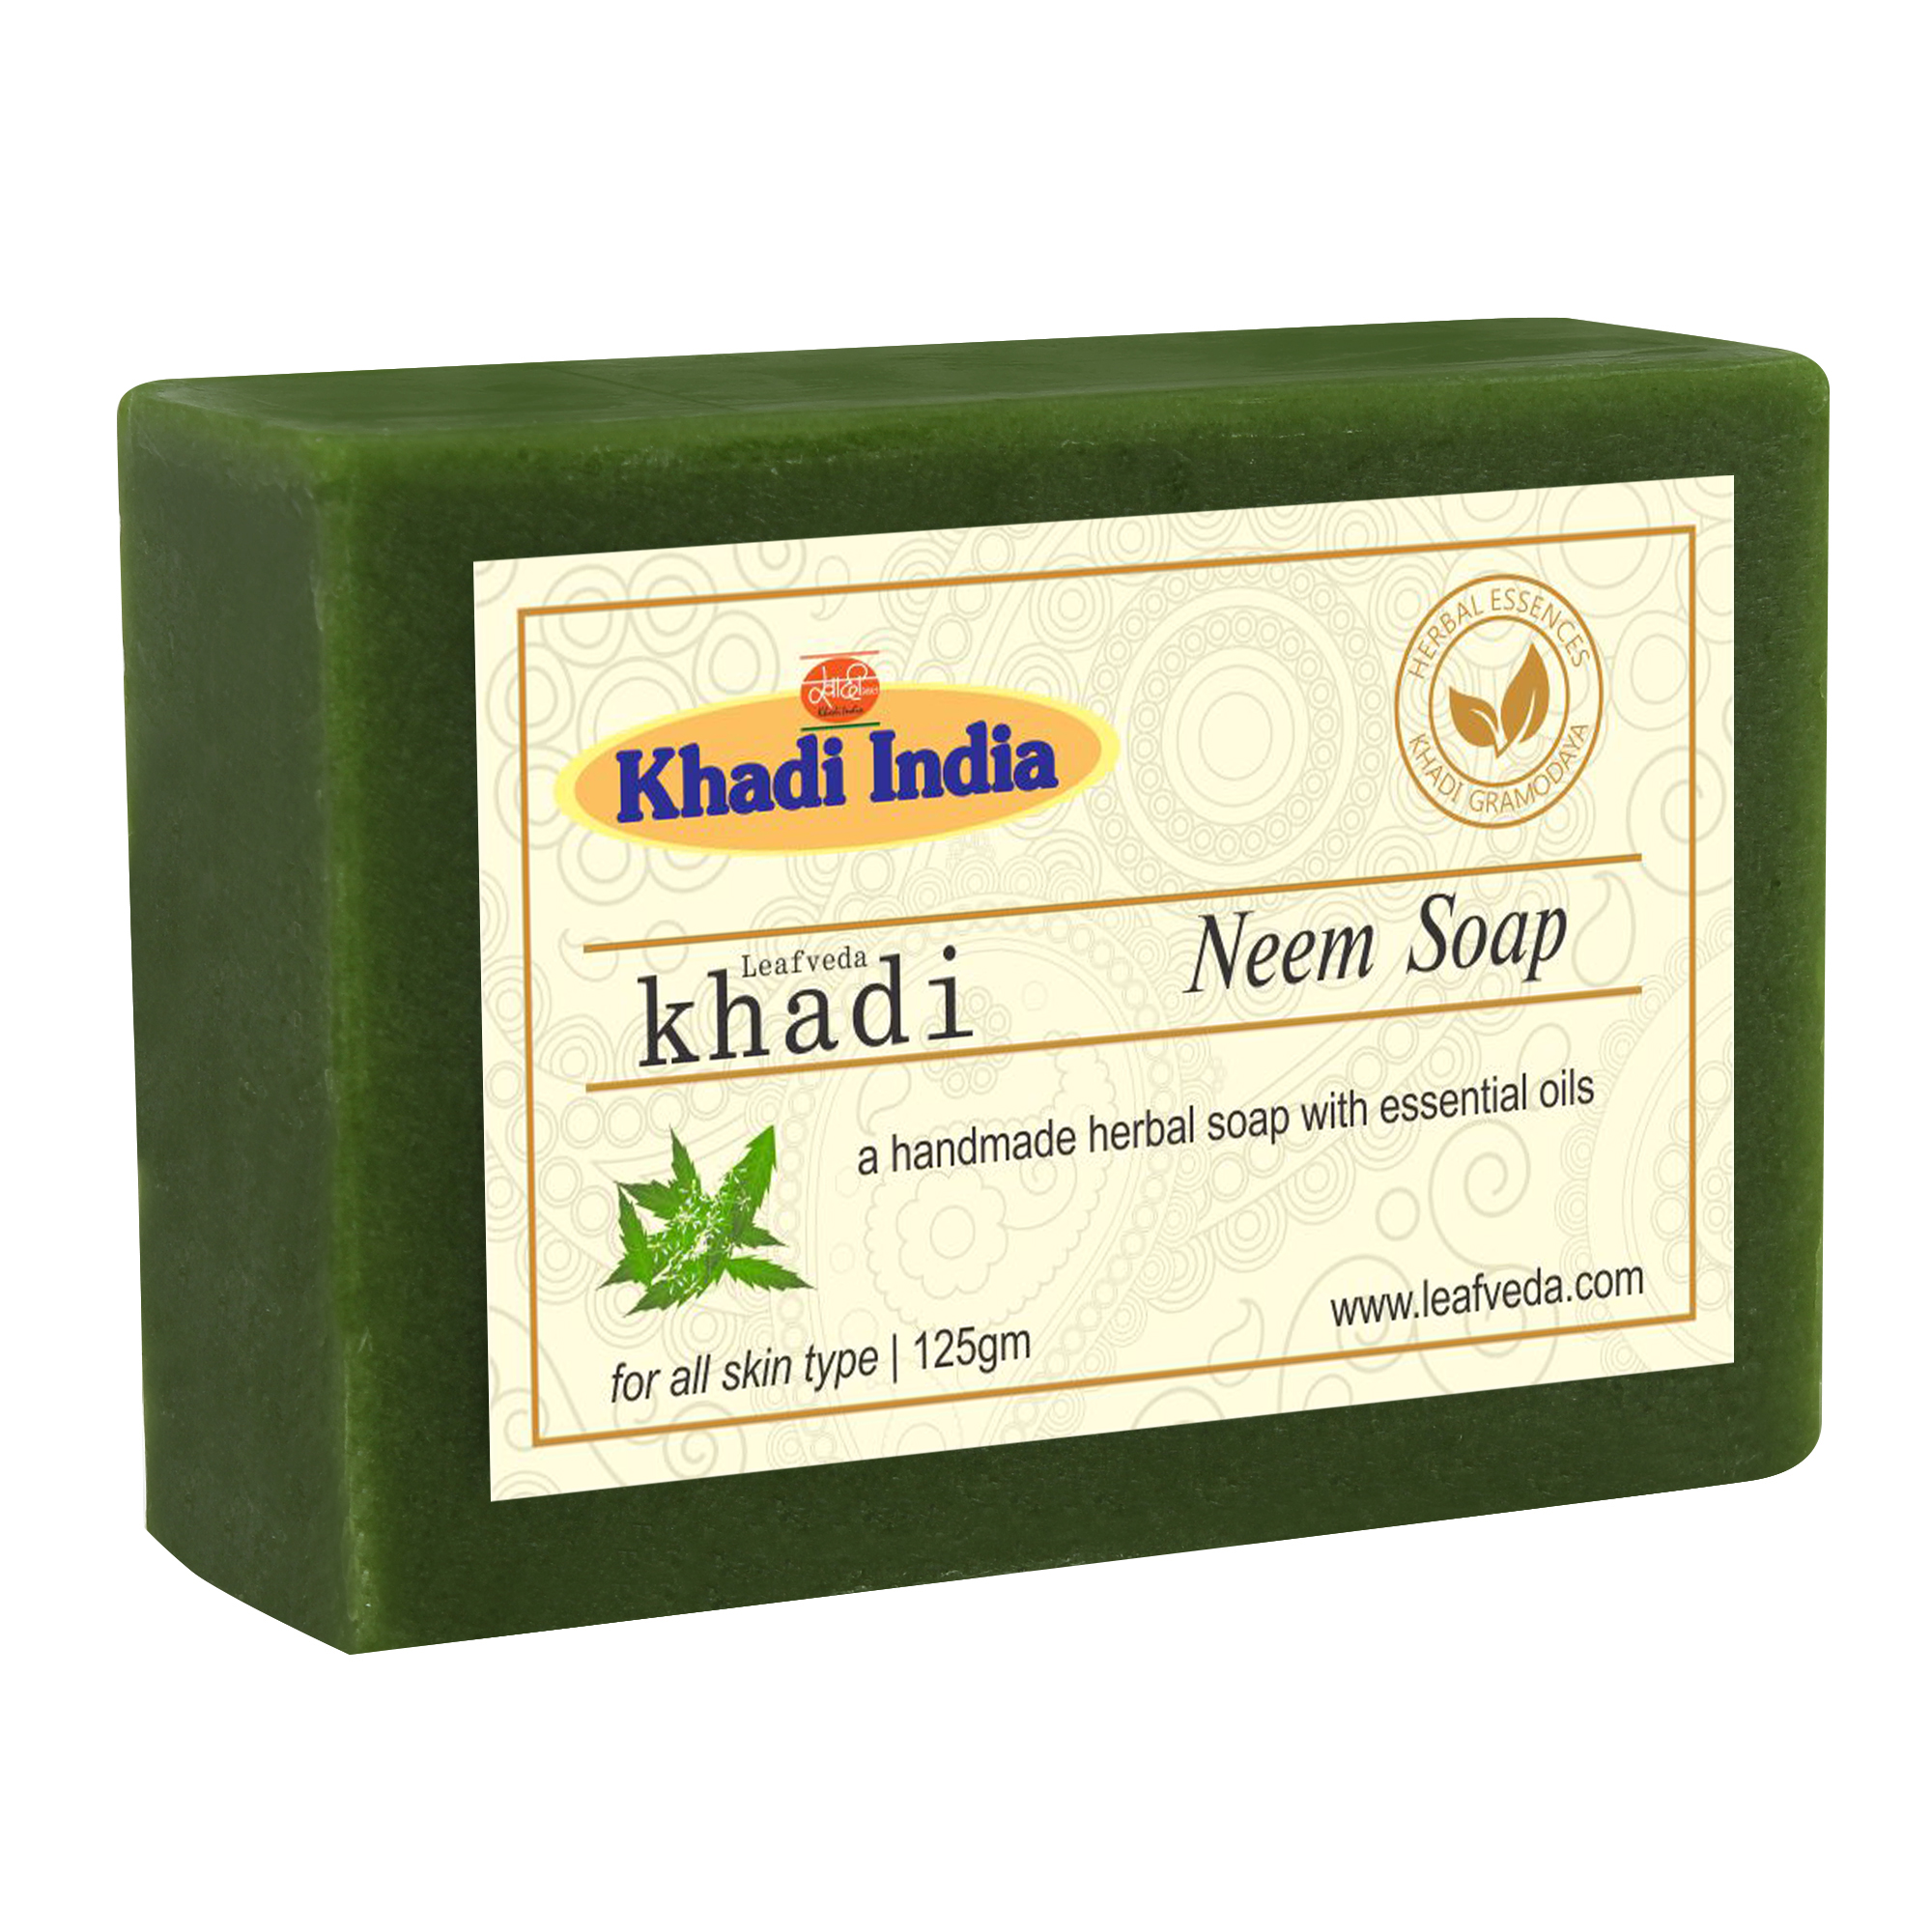 Buy Khadi Leafveda Neem Soap at Best Price Online